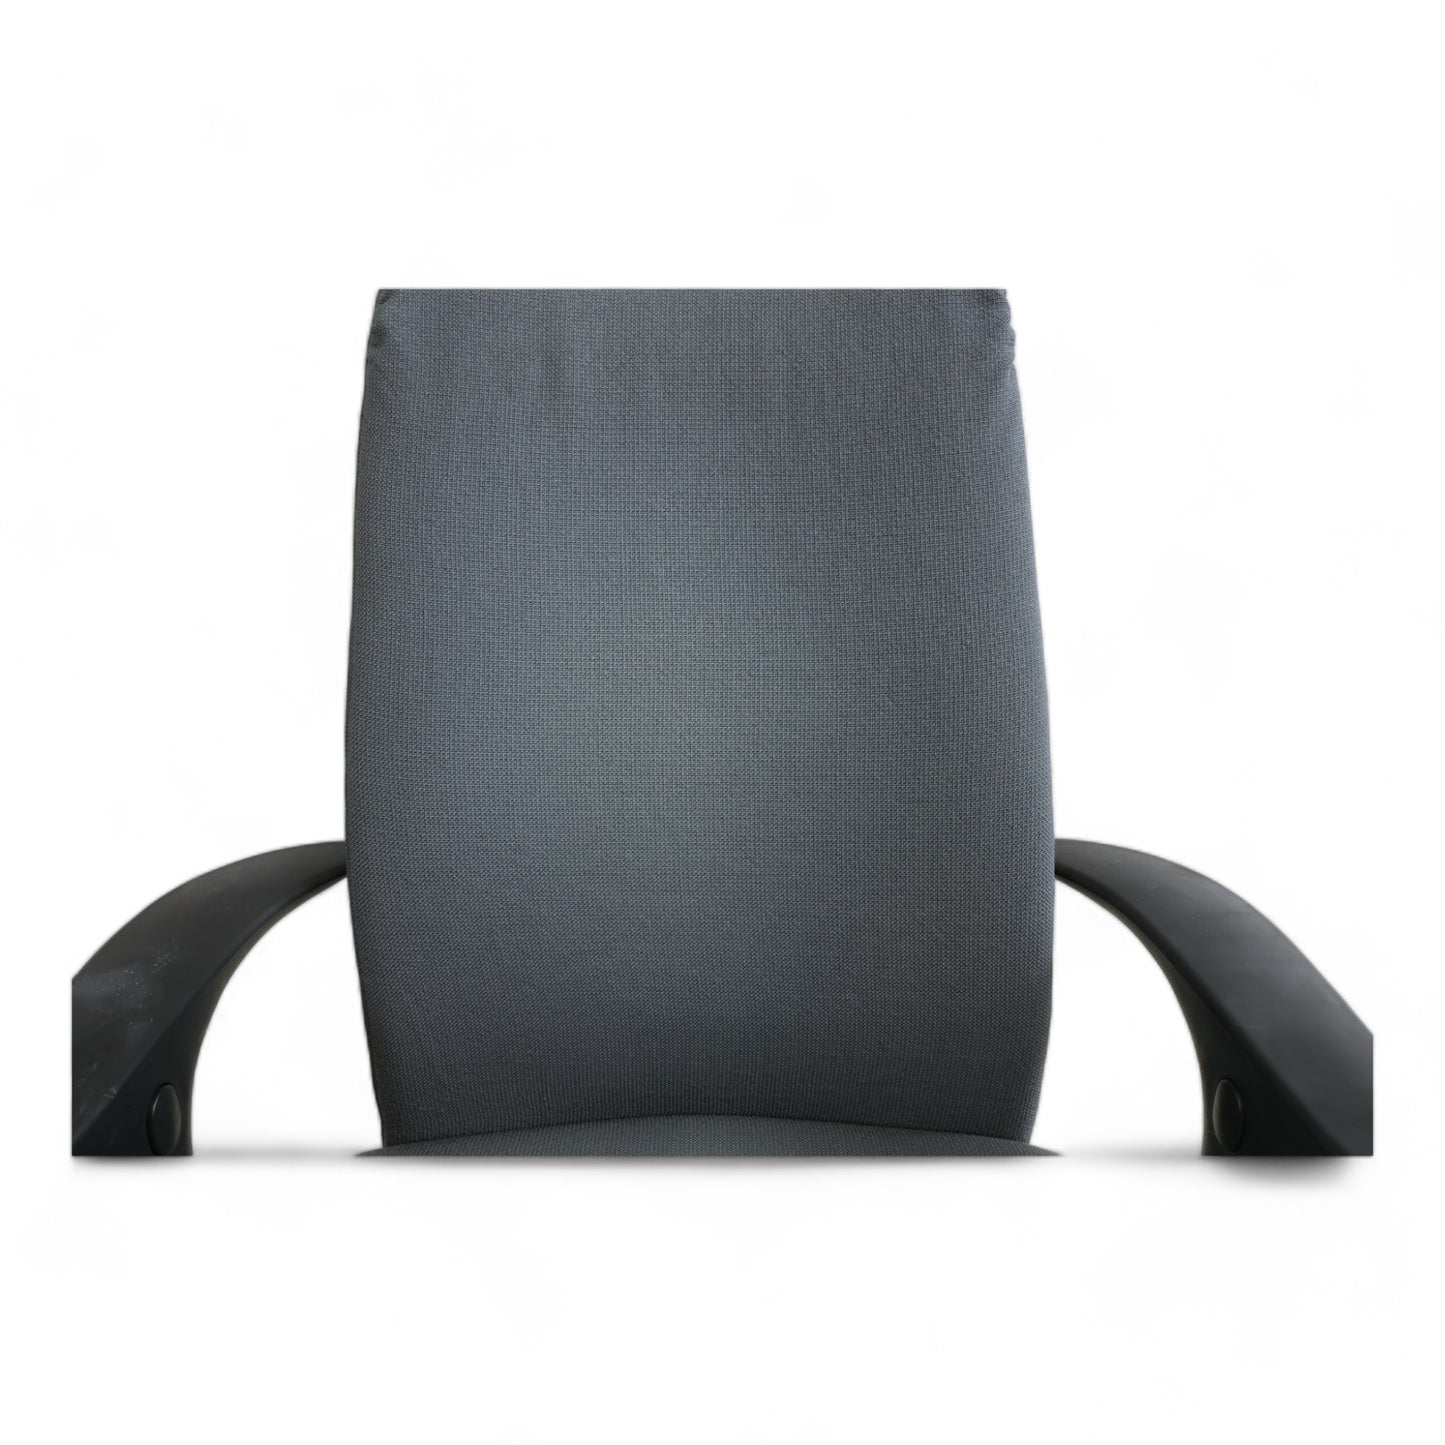 Nyrenset | Mørk grå Håg Futu kontorstol med justerbar høyde